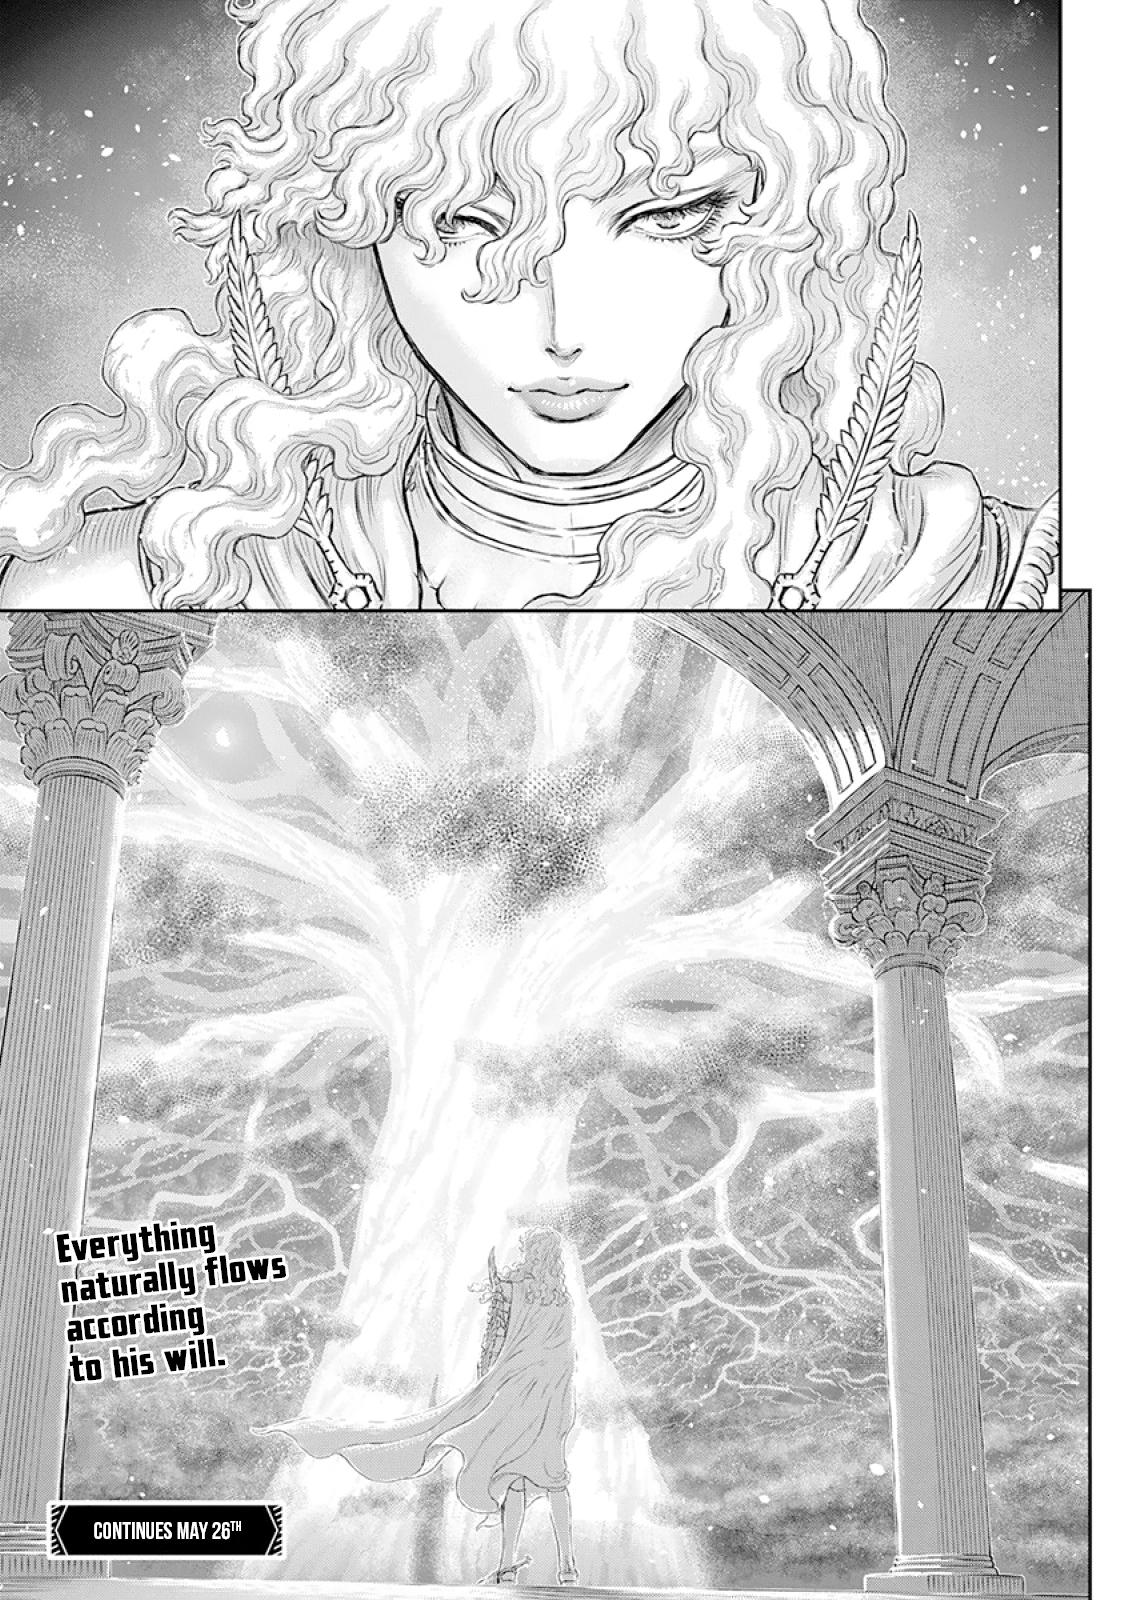 Berserk Manga Chapter 372 image 22